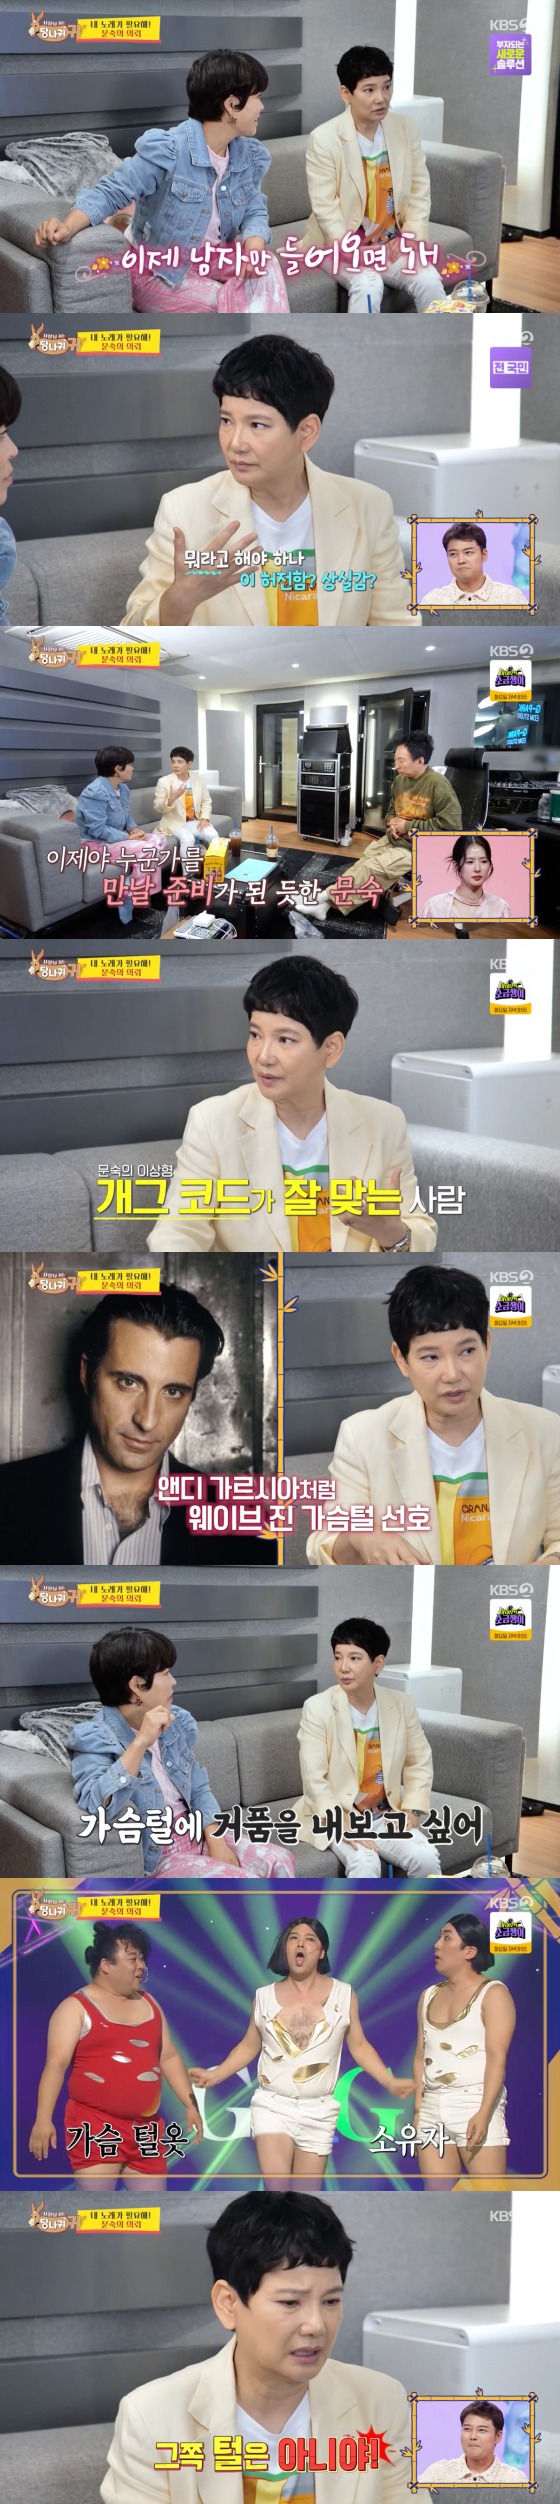 KBS 2TV '사장님 귀는 당나귀 귀'